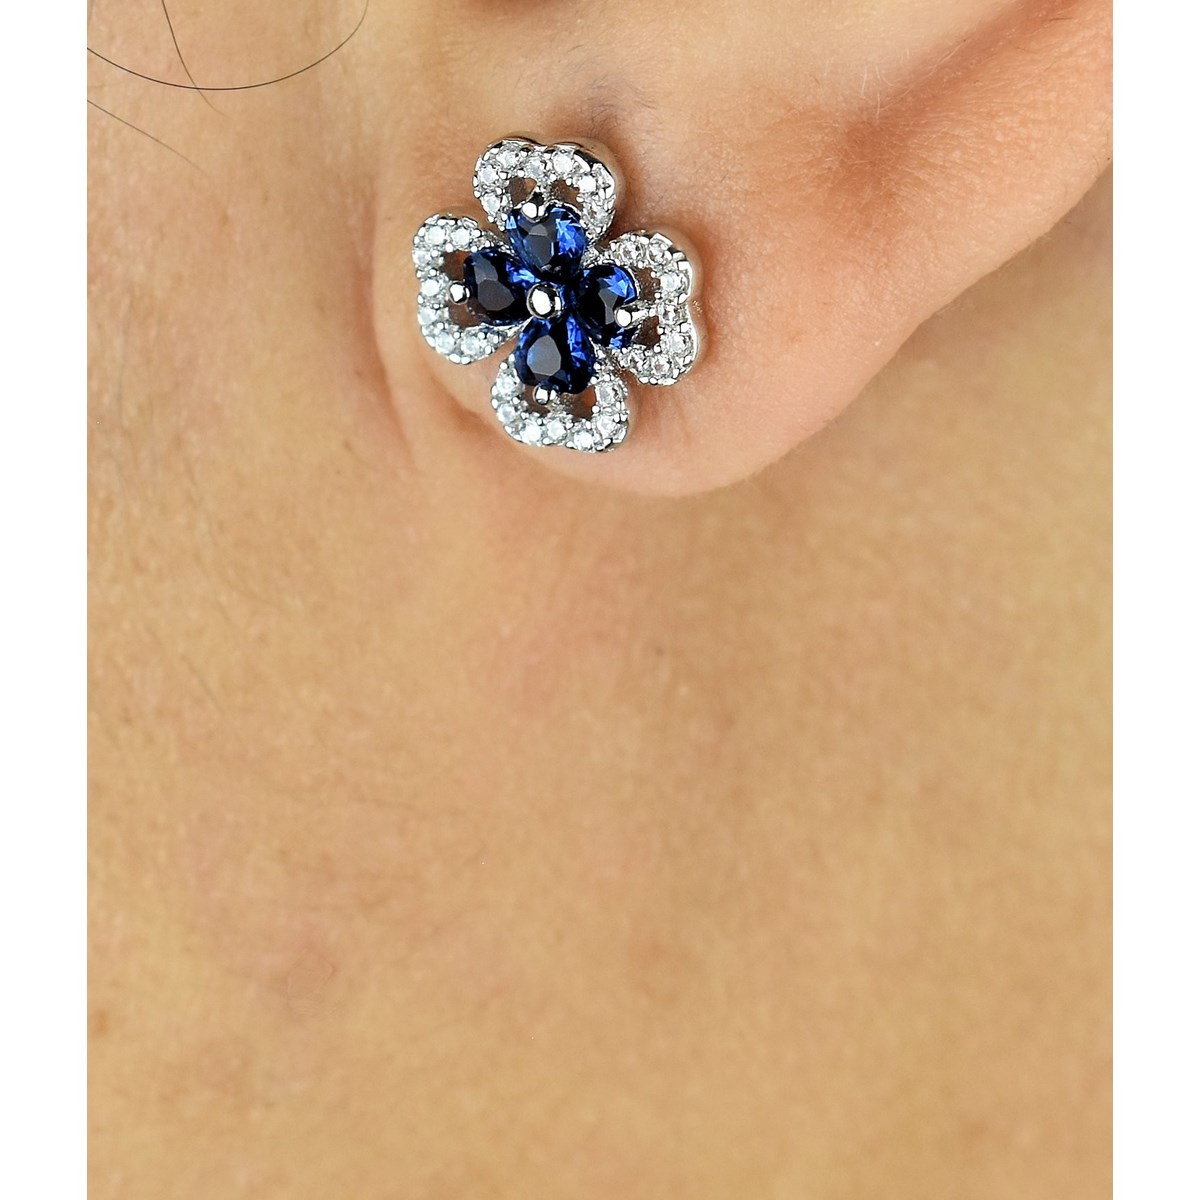 Boucles d'oreilles trèfle de coeurs oxydes de zirconium bleus roi Argent 925 Rhodié - vue 2